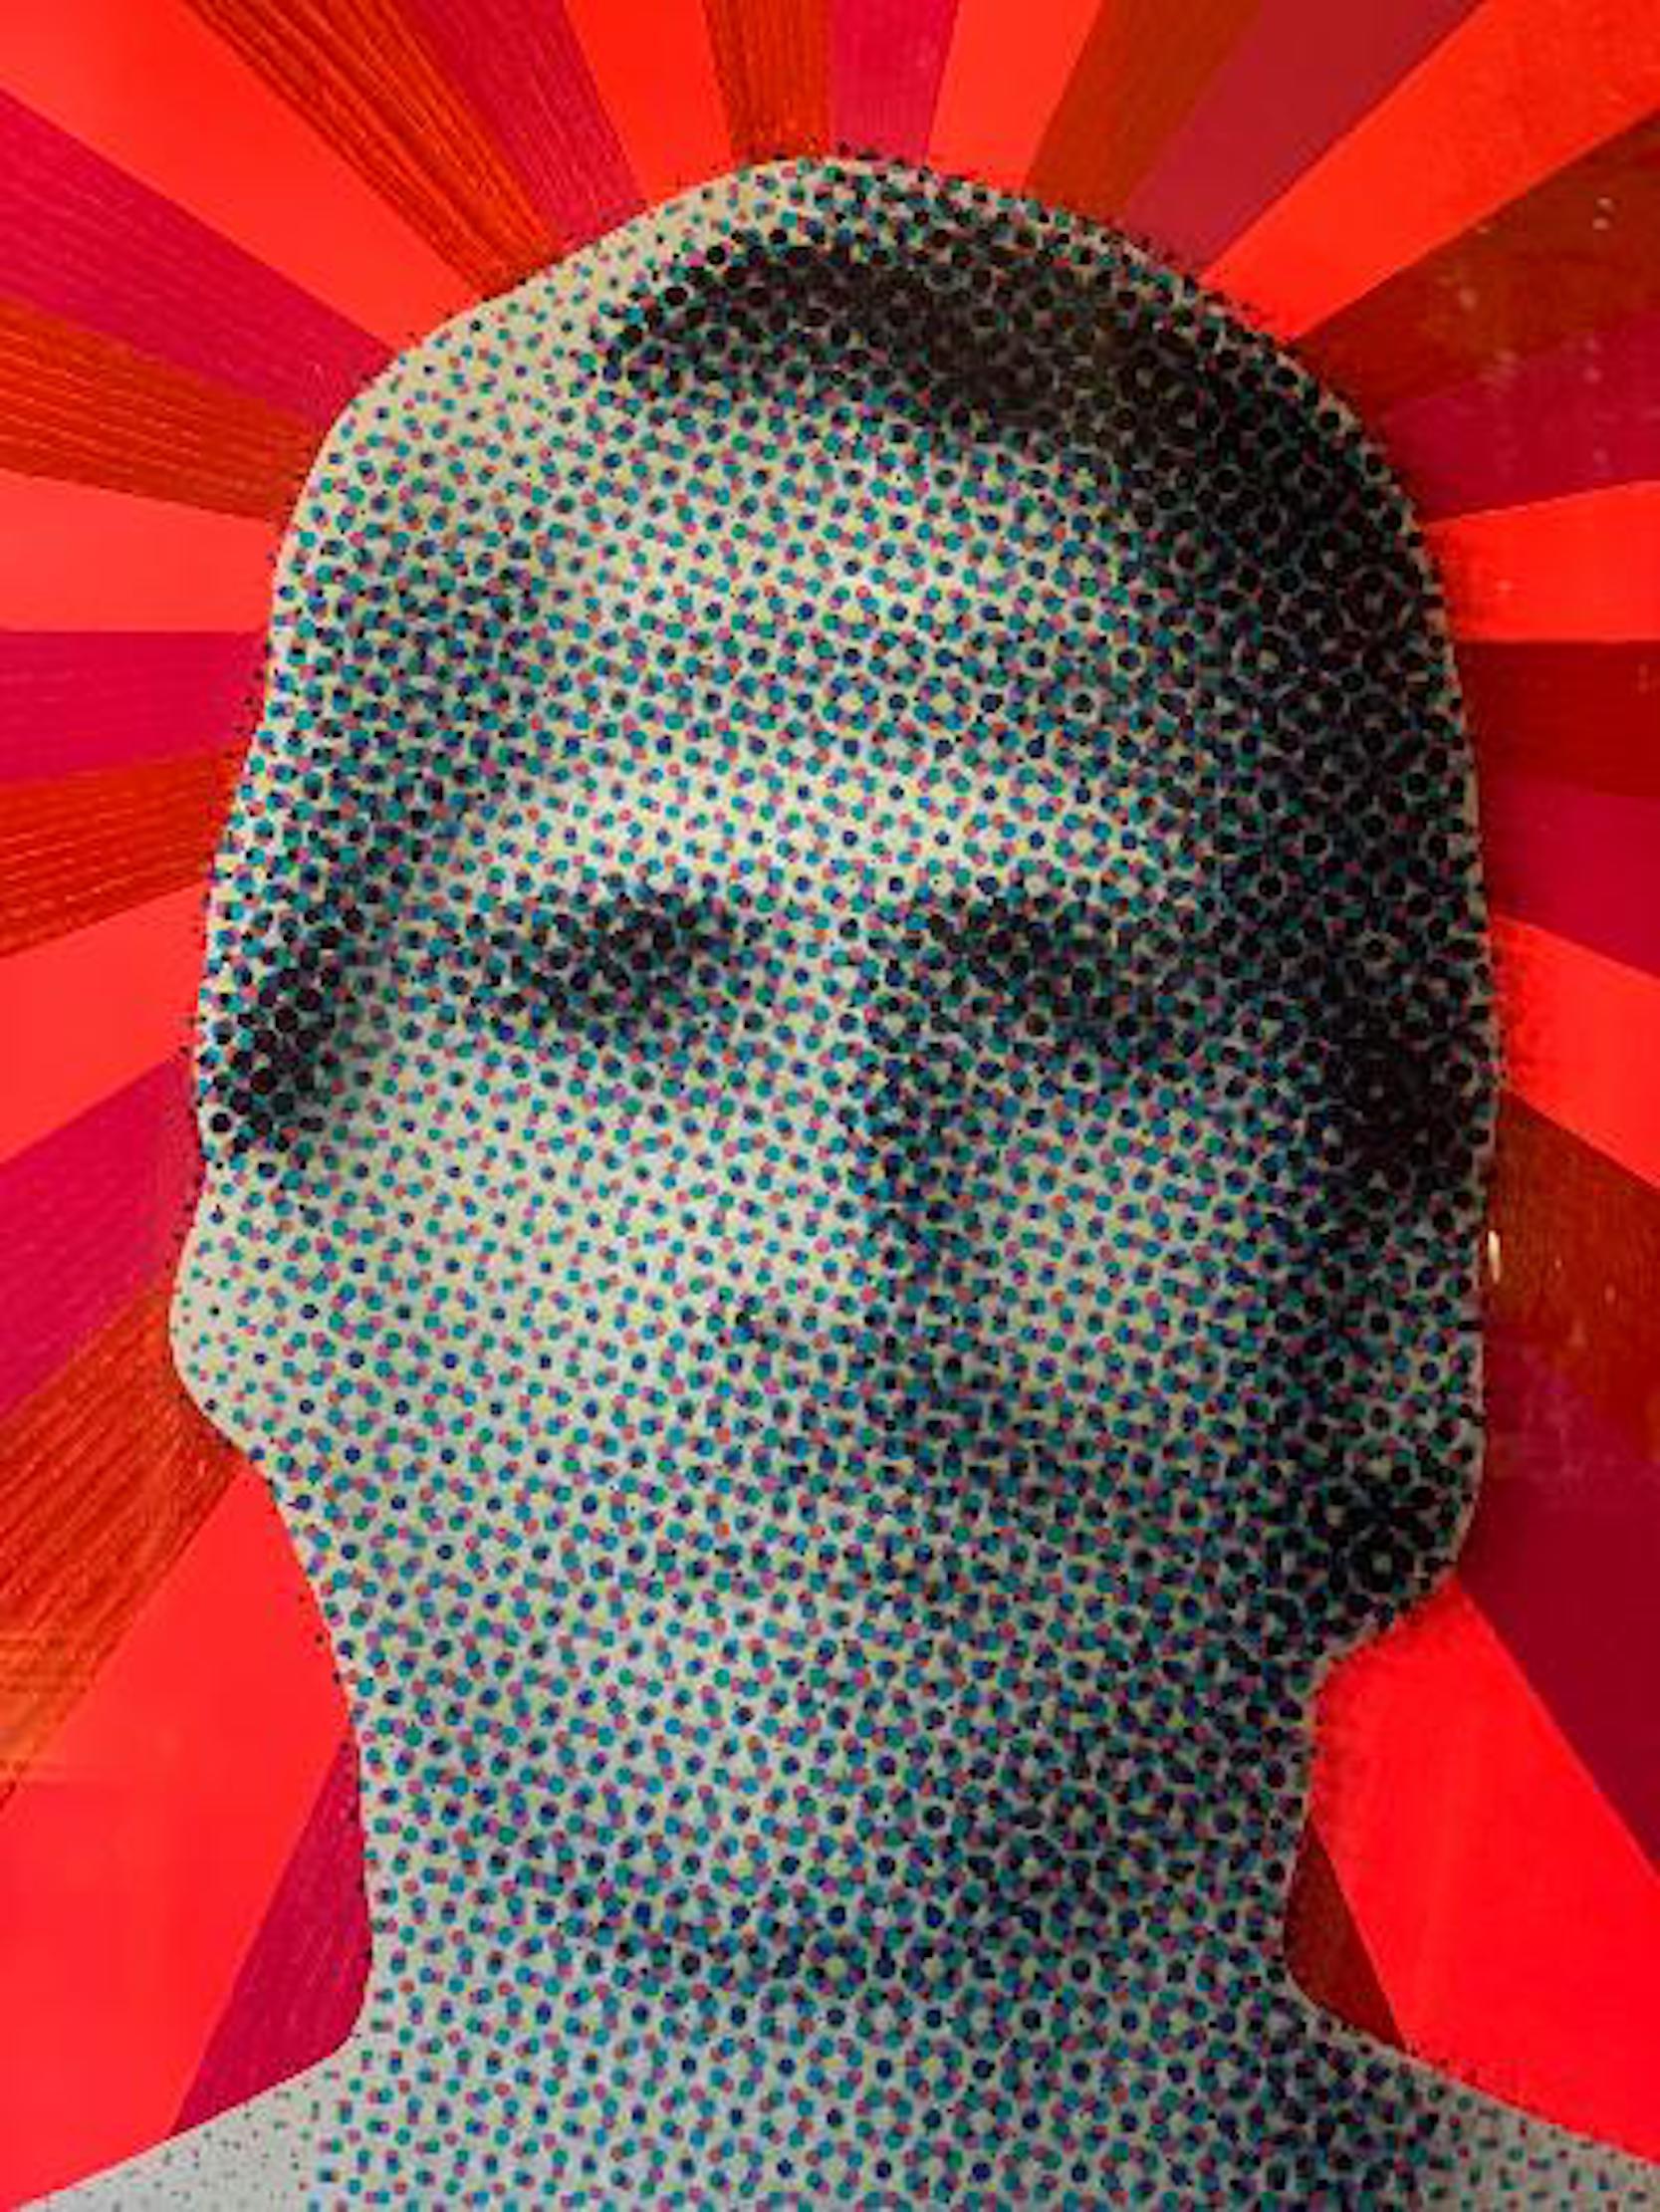 Sehr großer, originaler digitaler Siebdruck auf Plexiglas mit Nagellack auf C-Druck, aufgezogen auf ein Sintra-Board-Gemälde der berühmten Skateboard-Ikone John Joseph Cardiel (geboren am 14. Dezember 1973) des berühmten amerikanischen